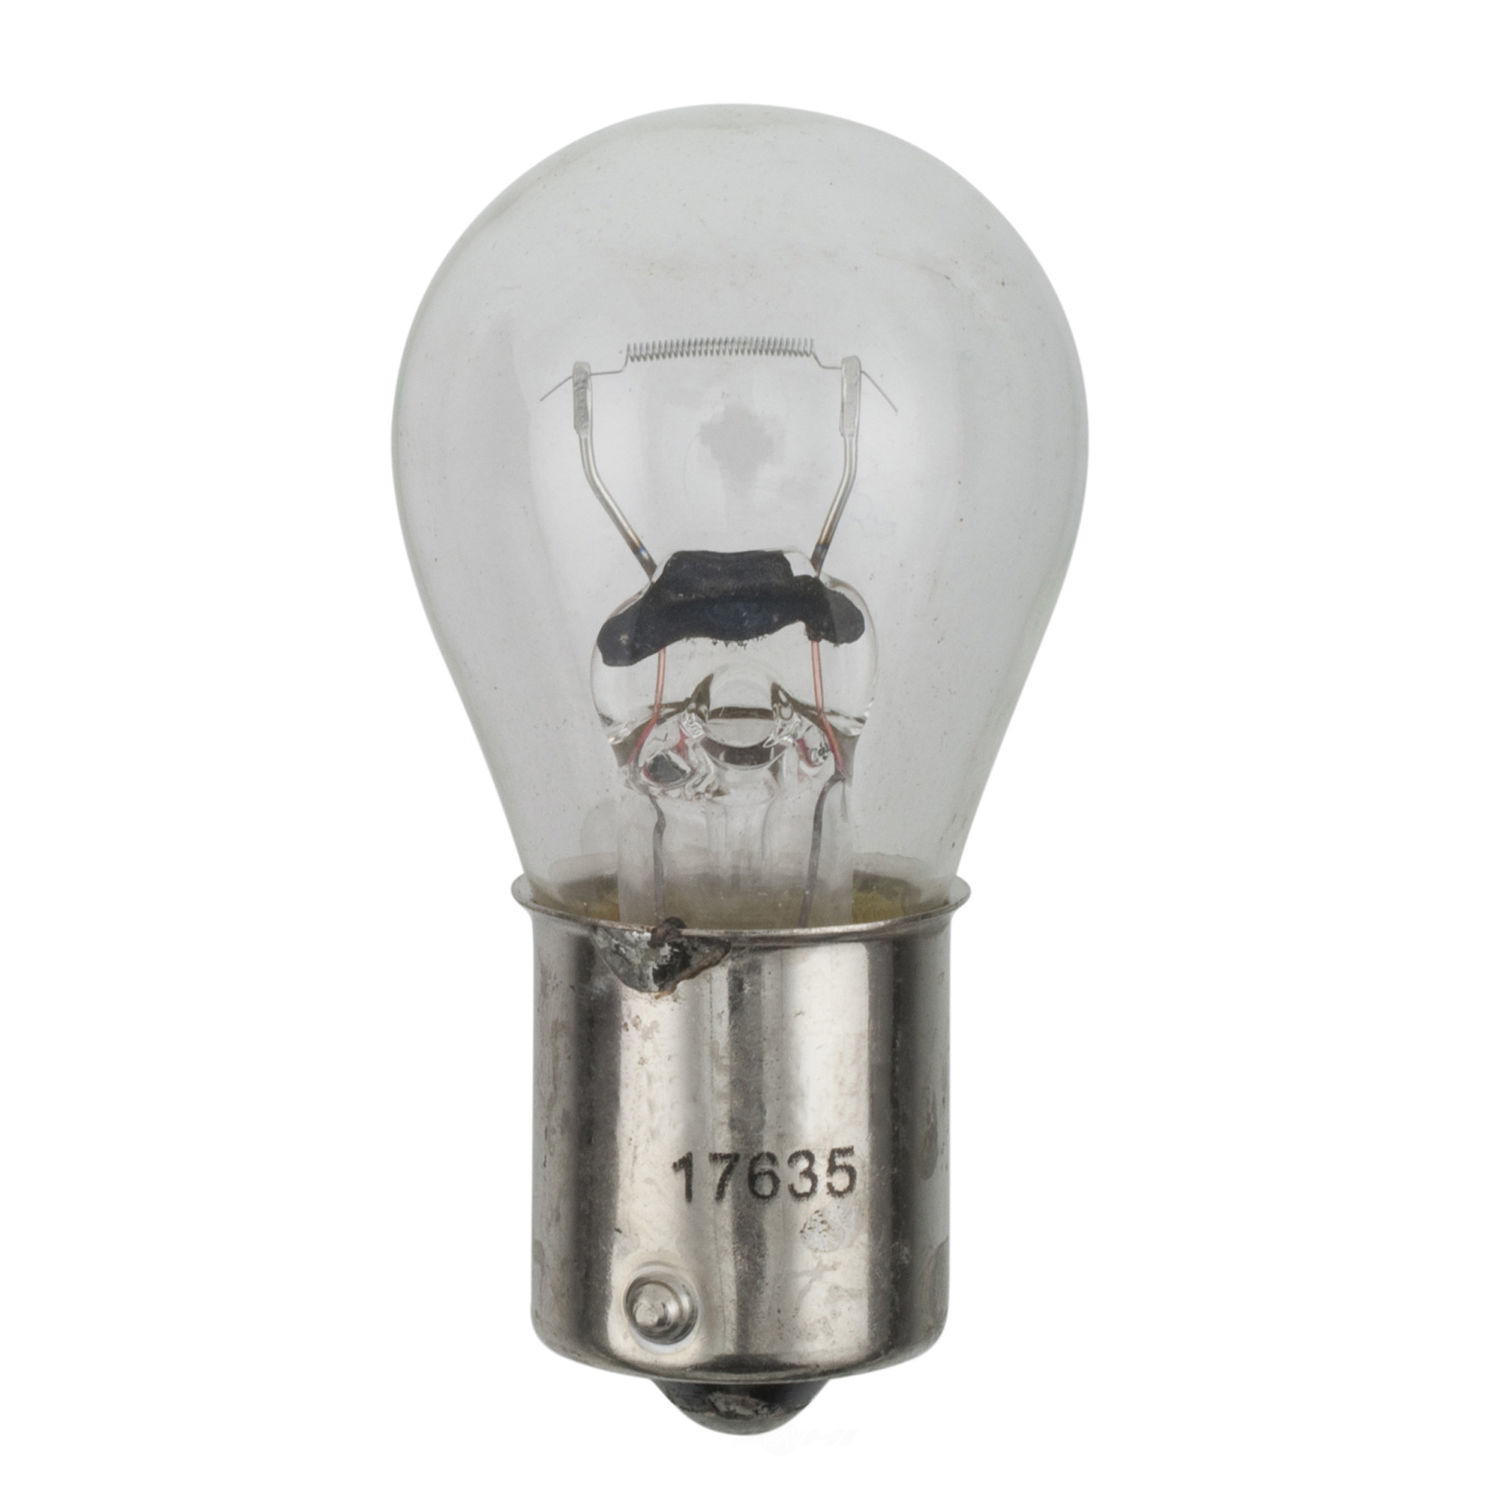 WAGNER LIGHTING - Turn Signal Light Bulb - WLP 17635